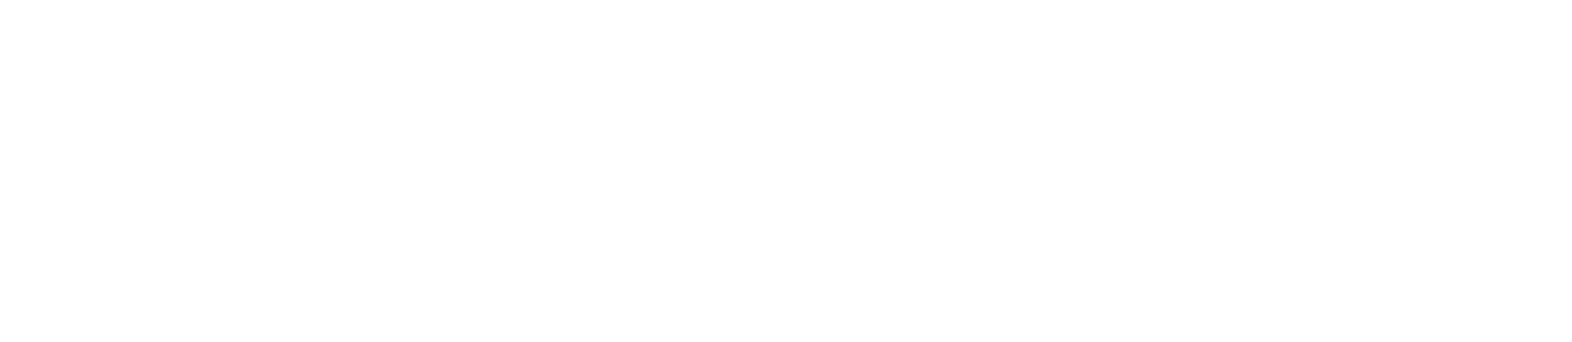 Nanobiotix logo large for dark backgrounds (transparent PNG)